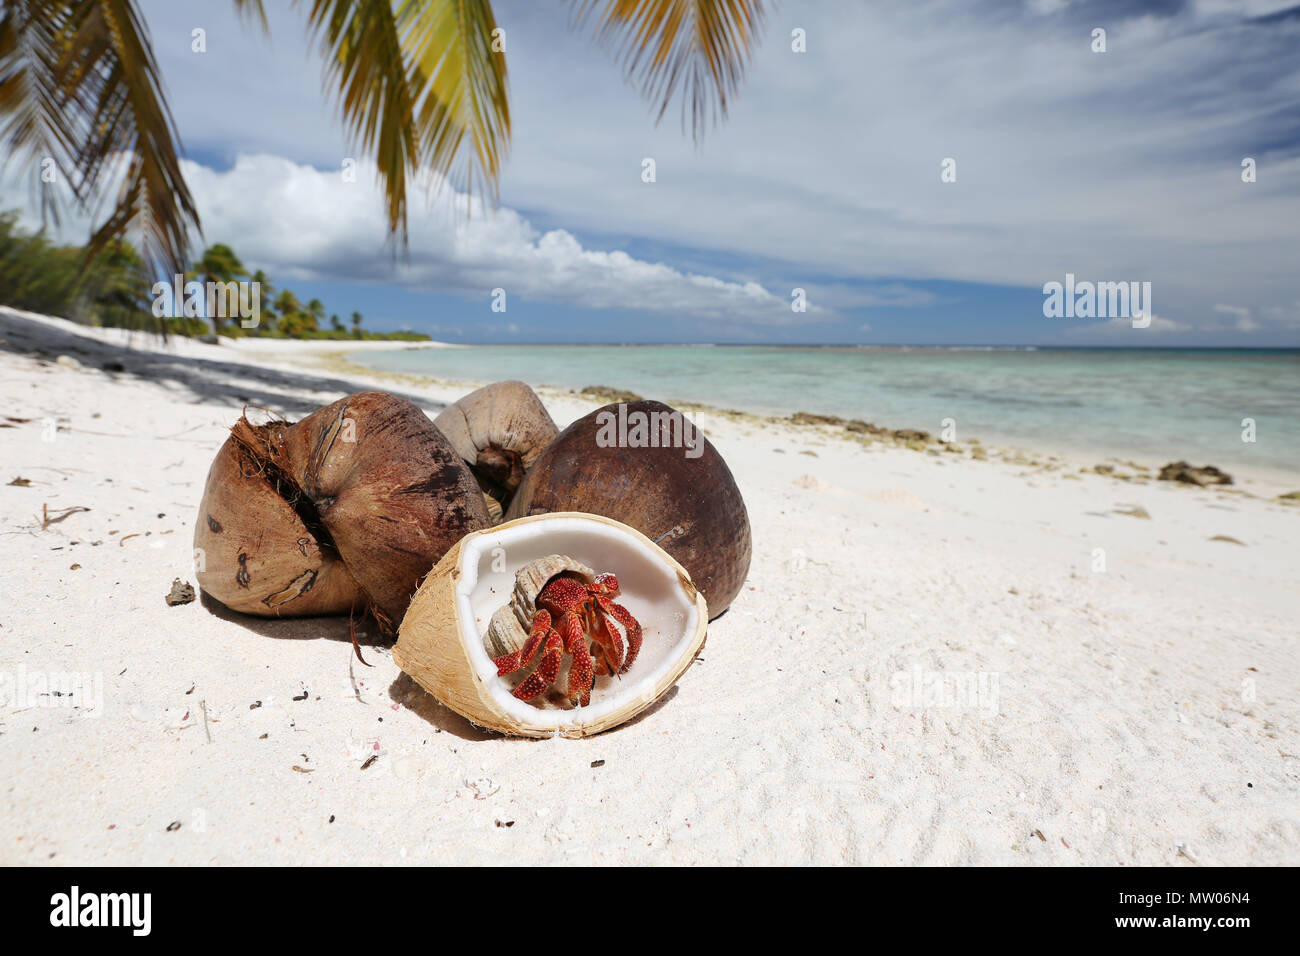 L'ermite de fraise et noix de coco sur la plage de sable blanc, l'île Christmas, Kiribati Banque D'Images